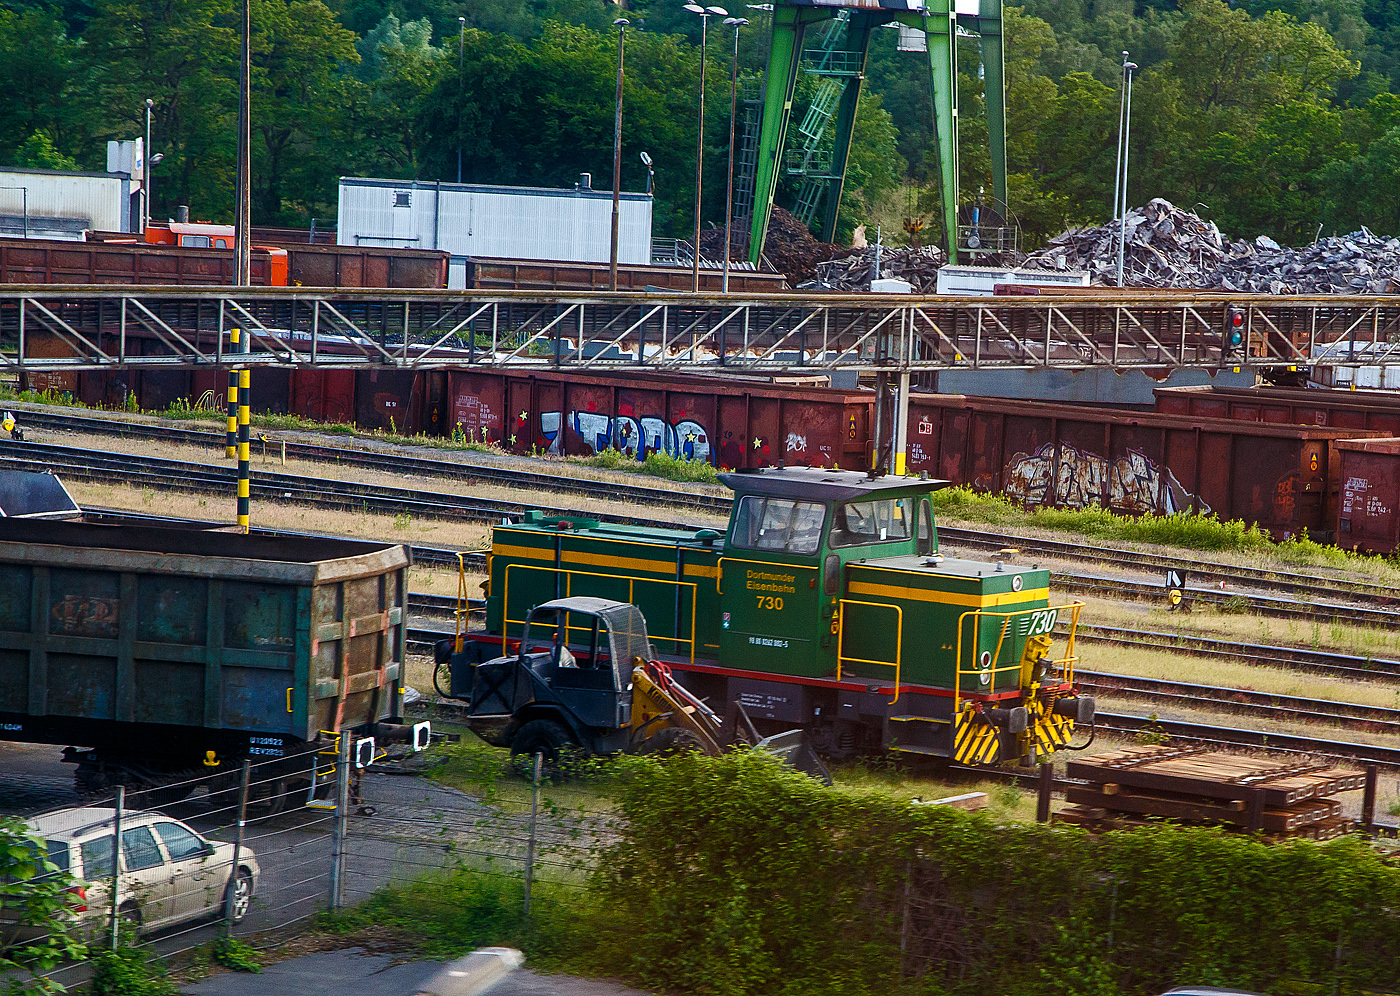 Die DE 730 der Dortmunder Eisenbahn GmbH (98 80 0262 002-5 D-DE), ex Krupp Stahl AG (Werk Bochum) KS-WB 631, eine MaK G 761 C, am 31.05.2022 bei Dortmund. Aufnahme aus dem Zug heraus.

Die dreiachsige Lok wurde 1978 von der Maschinenbau Kiel GmbH (MaK) unter der Fabriknummer 700023 gebaut und an die Krupp Stahl AG geliefert, 1994 bernahm die DE den Bahnbetrieb im KS Werk Bochum und die Lok ging an die Dortmunder Eisenbahn GmbH, wo sie nun als 730 gefhrt wird. Zum 01.01.2007 erhielt sie die NVR-Nummer 98 80 0262 002-5 D-DE.

Die Lokomotive MaK G 761 C ist eine dieselhydraulische Lokomotive, die von der Maschinenbau Kiel (MaK) gebaut wurde. Sie war zusammen mit der leistungsstrkeren G 762 C die erste Bauart des 3. Typenprogramms der MaK, das ab 1977 angeboten wurde. Gemeinsam war diesem Programm, dass nicht mehr auch im Schiffbau verwendete langsam laufenden Motoren aus eigener Produktion, sondern schnelllaufende Fremdmotoren eingebaut wurden, bei diesem Modell von MTU. Auch waren die Fhrerhuser aus Sicherheitsgrnden nicht mehr direkt vom Boden, sondern nur ber den Umlauf erreichbar. Die MaK G 761 C hat drei im Rahmen sitzende Achsen, die ber Gelenkwellen angetrieben werden. Sie ist mit zwei verschiedenen Motoren mit 470 kW bzw. sptere 500 kW angeboten worden. Sie erreicht eine maximale Geschwindigkeit von bis zu 55 km/h. Ihre Dienstgewicht betrgt bis zu 66 t, der Tankinhalt 1.500 l. 

Zwischen 1977 und 1982 wurden 18 Lokomotiven, davon fnf (wie diese hier) mit dem leistungsschwcheren Motor, gebaut. Die Lokomotiven wurden berwiegend an Werk- und Hafenbahnen, vor allem in die Montanindustrie, geliefert. Allein sieben Loks gingen an die Krupp Stahl AG. Je zwei Loks kauften die Shell AG und die Neusser Eisenbahn. Alle 18 gebauten Lokomotiven befinden sich noch im Einsatz. Im Deutschen Fahrzeugeinstellungsregister wurde fr diese Bauart die Baureihennummer 98 80 0262.0 vergeben.

TECHNISCHE DATEN:
Spurweite:  1.435 mm (Normalspur)
Achsfolge:  C
Lnge ber Puffer:  9.870 mm
Achsstand: 3.800 mm
grte Breite:  3.100 mm
grte Hhe ber Schienenoberkante:  4.220 mm
Treibraddurchmesser:  1.000 mm (neu)
kleinster befahrbarer Gleisbogen: 40 m
Dienstgewicht:  54 - 66 t
Kraftstoffvorrat:  1500 l
Motor:  Sechszylinder-MTU-Dieselmotor, Typ  MTU 6V 331 TC11 (sptere Vers.TC12)
Leistung: 470 kW  (sptere Vers. 500 kW)
Nenndrehzahl: 1.050 U/min
Getriebe: Voith L4r4zU2
Leistungsbertragung: hydraulisch
Hchstgeschwindigkeit:  30 - 55 km/h
